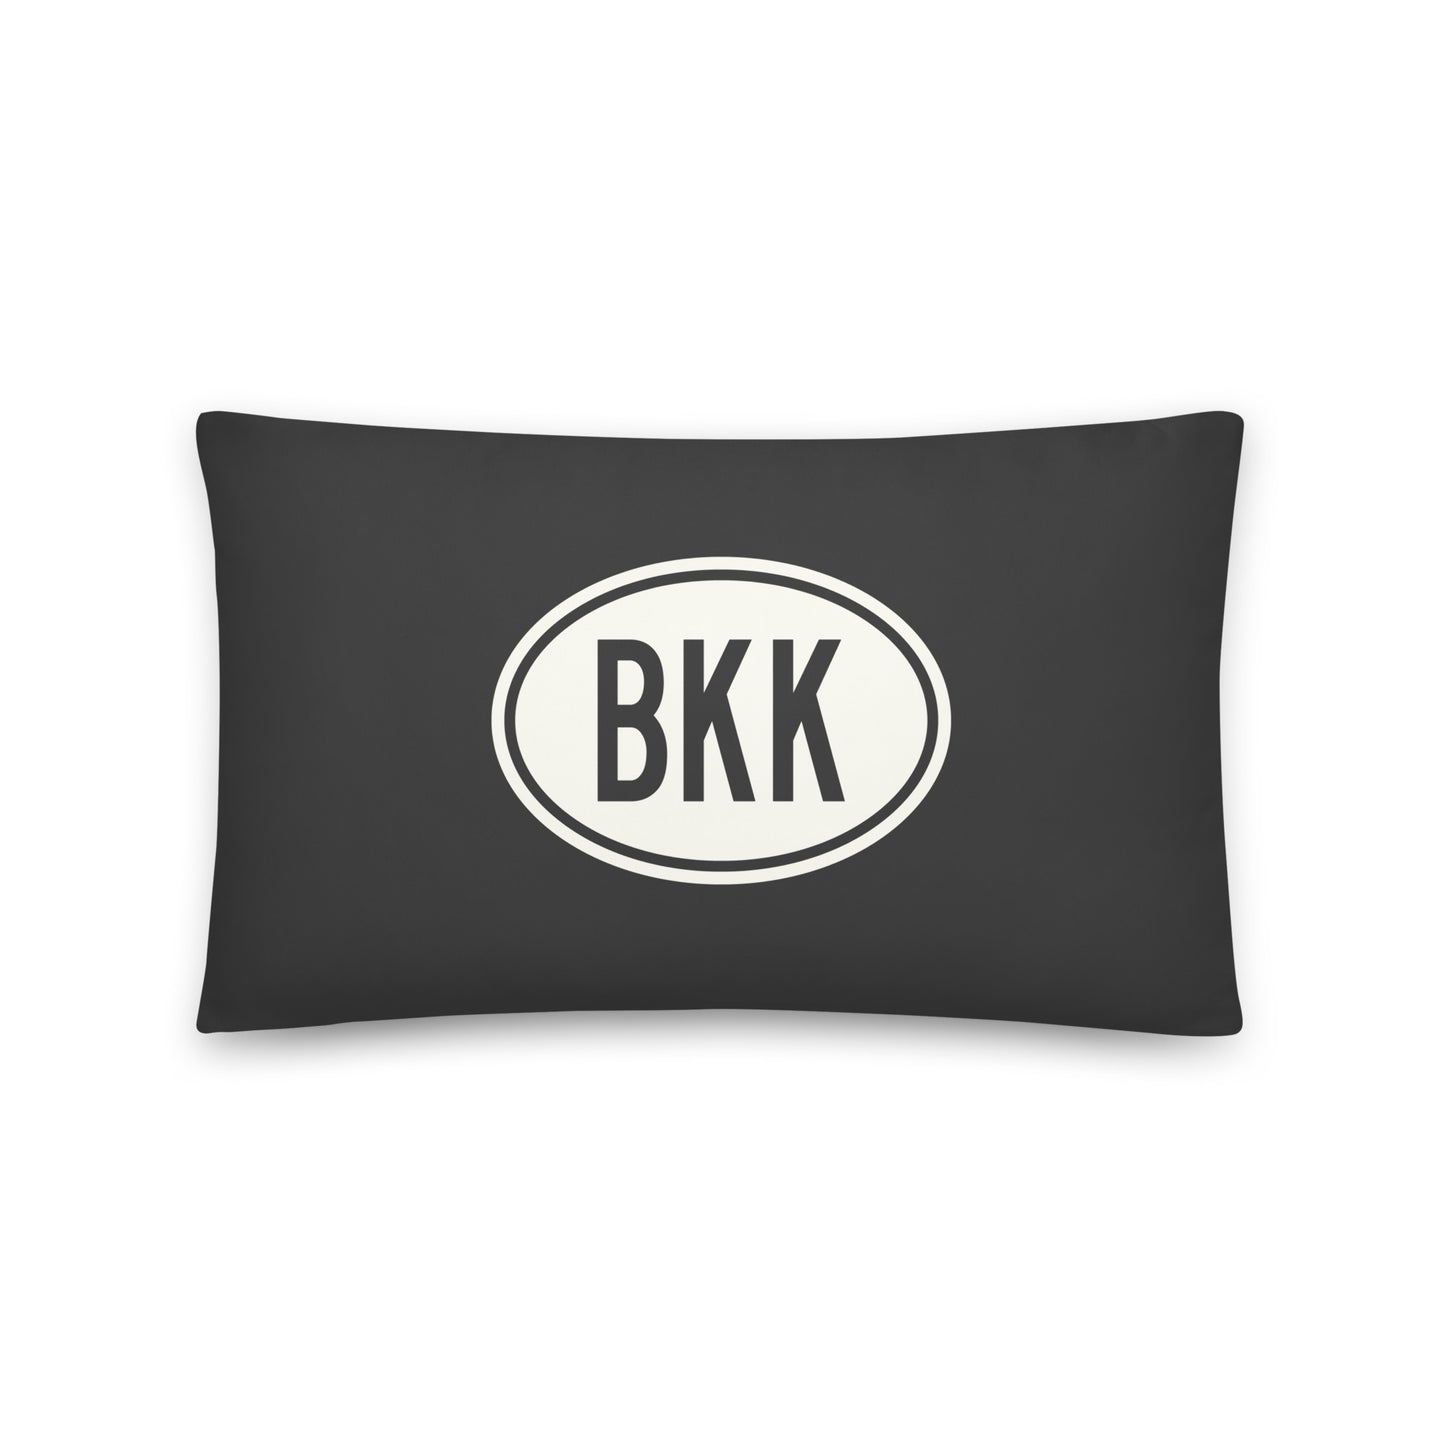 Unique Travel Gift Throw Pillow - White Oval • BKK Bangkok • YHM Designs - Image 01